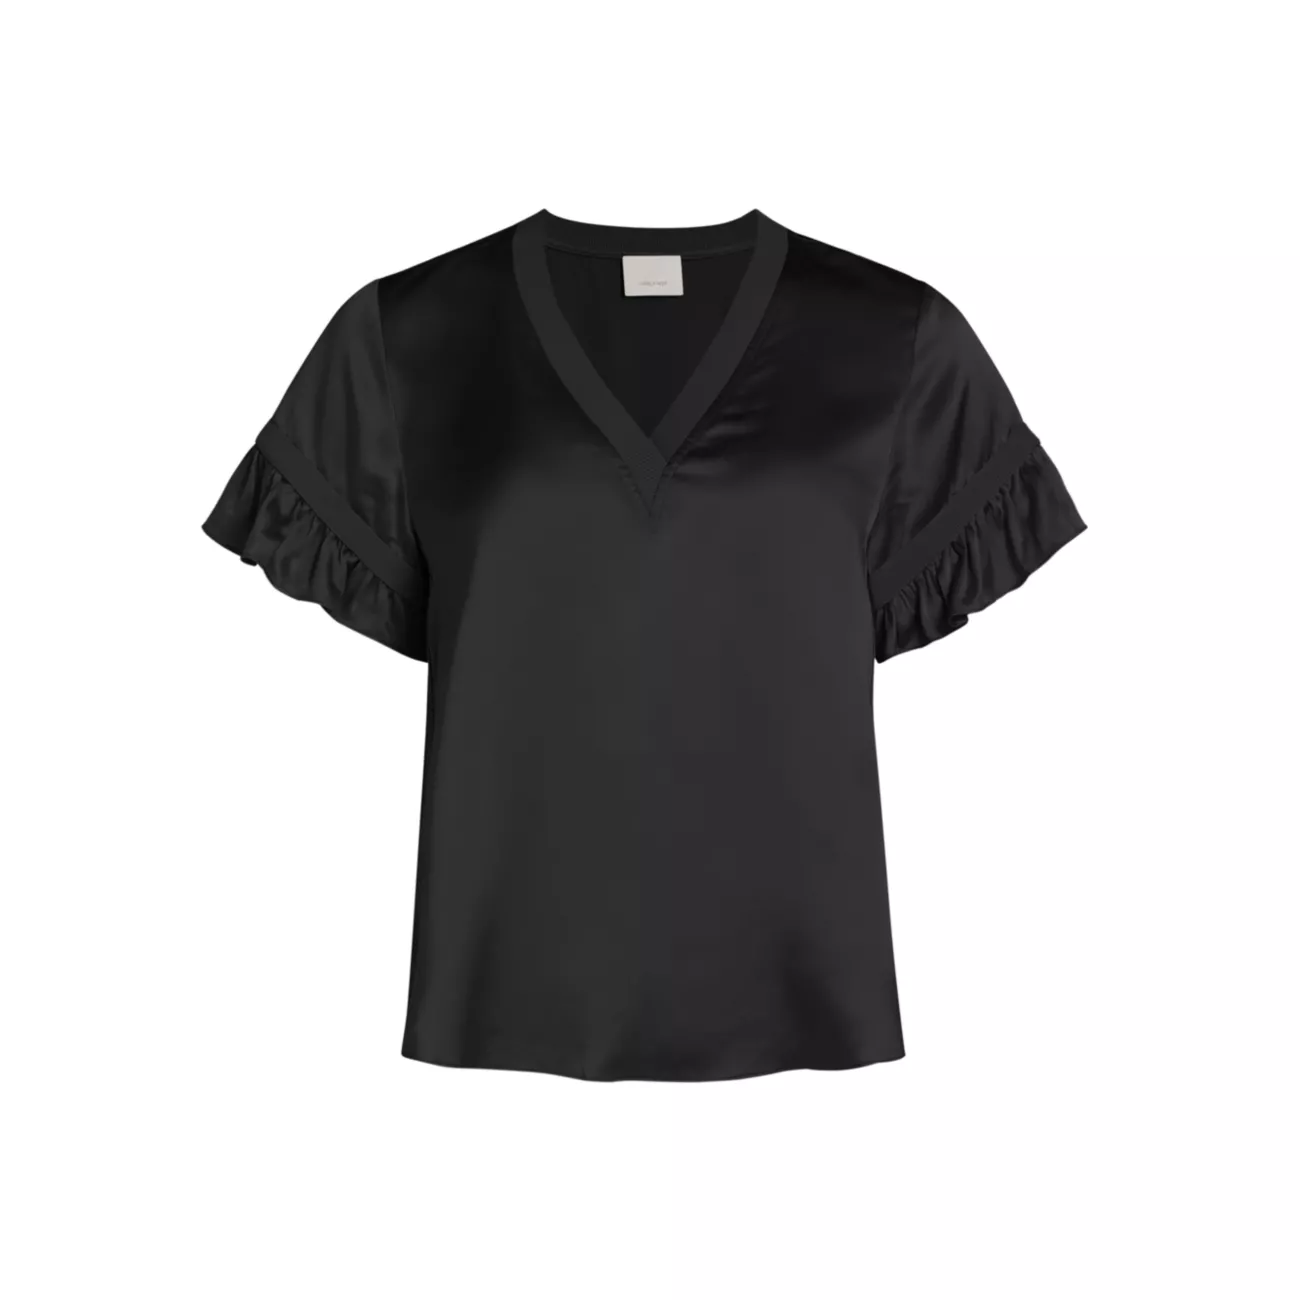 Шелковая блузка Linnea с v-образным вырезом Cinq a Sept